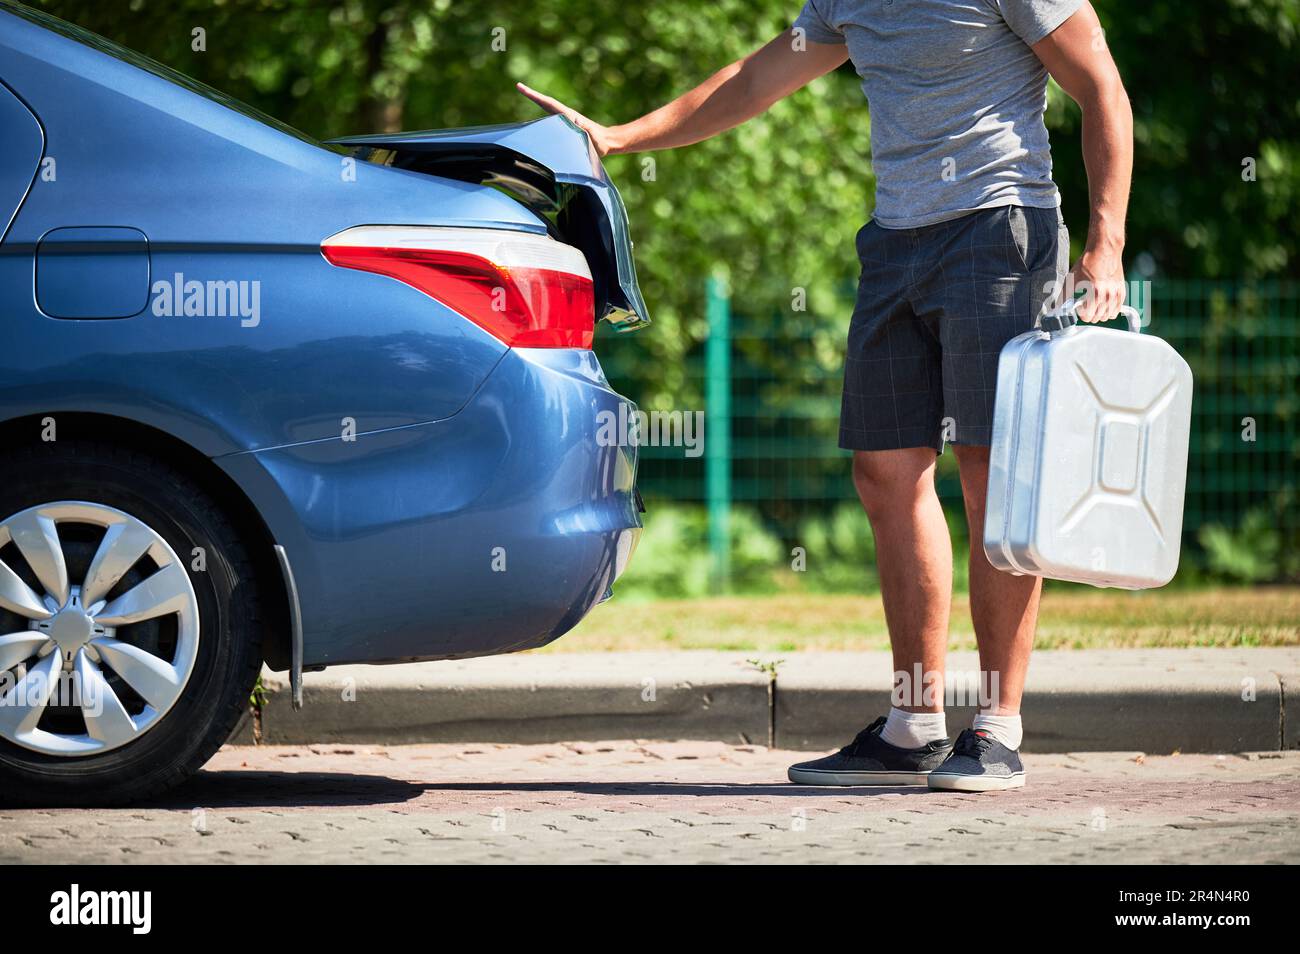 Ein Mann, der einen Kanister mit Benzin aus dem Kofferraum rausholt. Freigestellte Ansicht eines männlichen Erwachsenen, der die Zisterne mit Benzin herausnimmt, um sein blaues Auto aufzutanken. Stockfoto